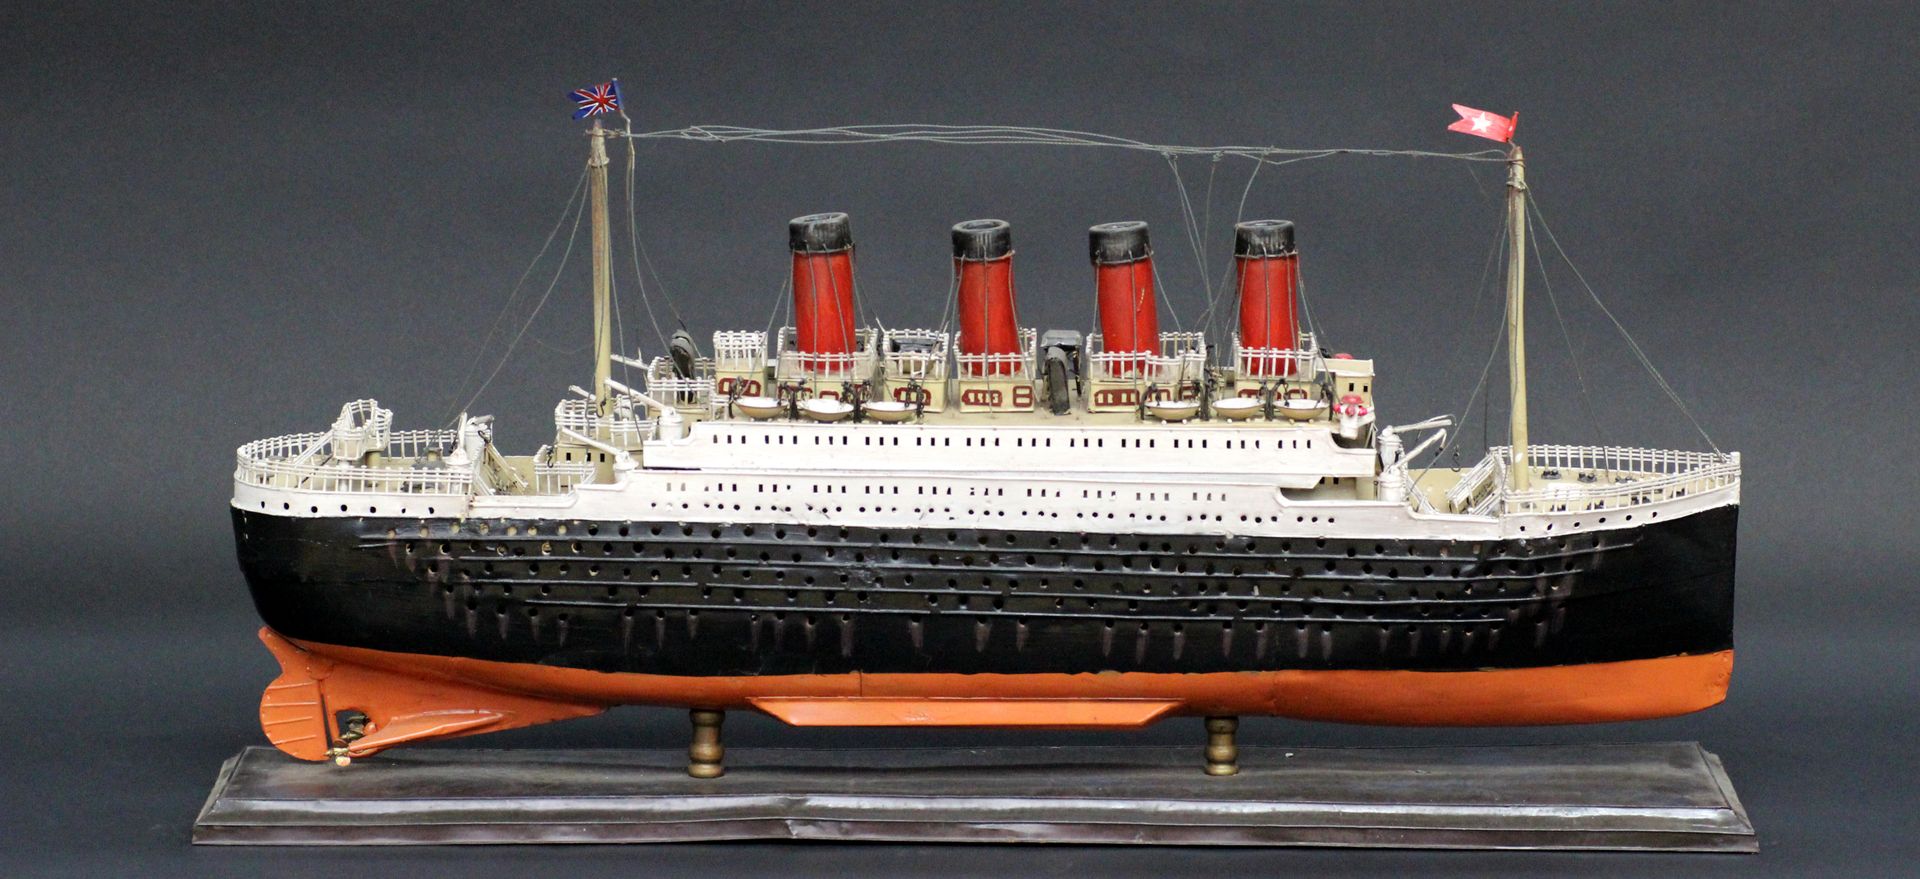 Null 一艘悬挂英国白星航运公司旗帜的跨大西洋班轮模型（可能是泰坦尼克号）。由金属板制成。黑色船体，四个烟囱，三个螺旋桨，白色上层甲板和红色烟囱。大约1880&hellip;